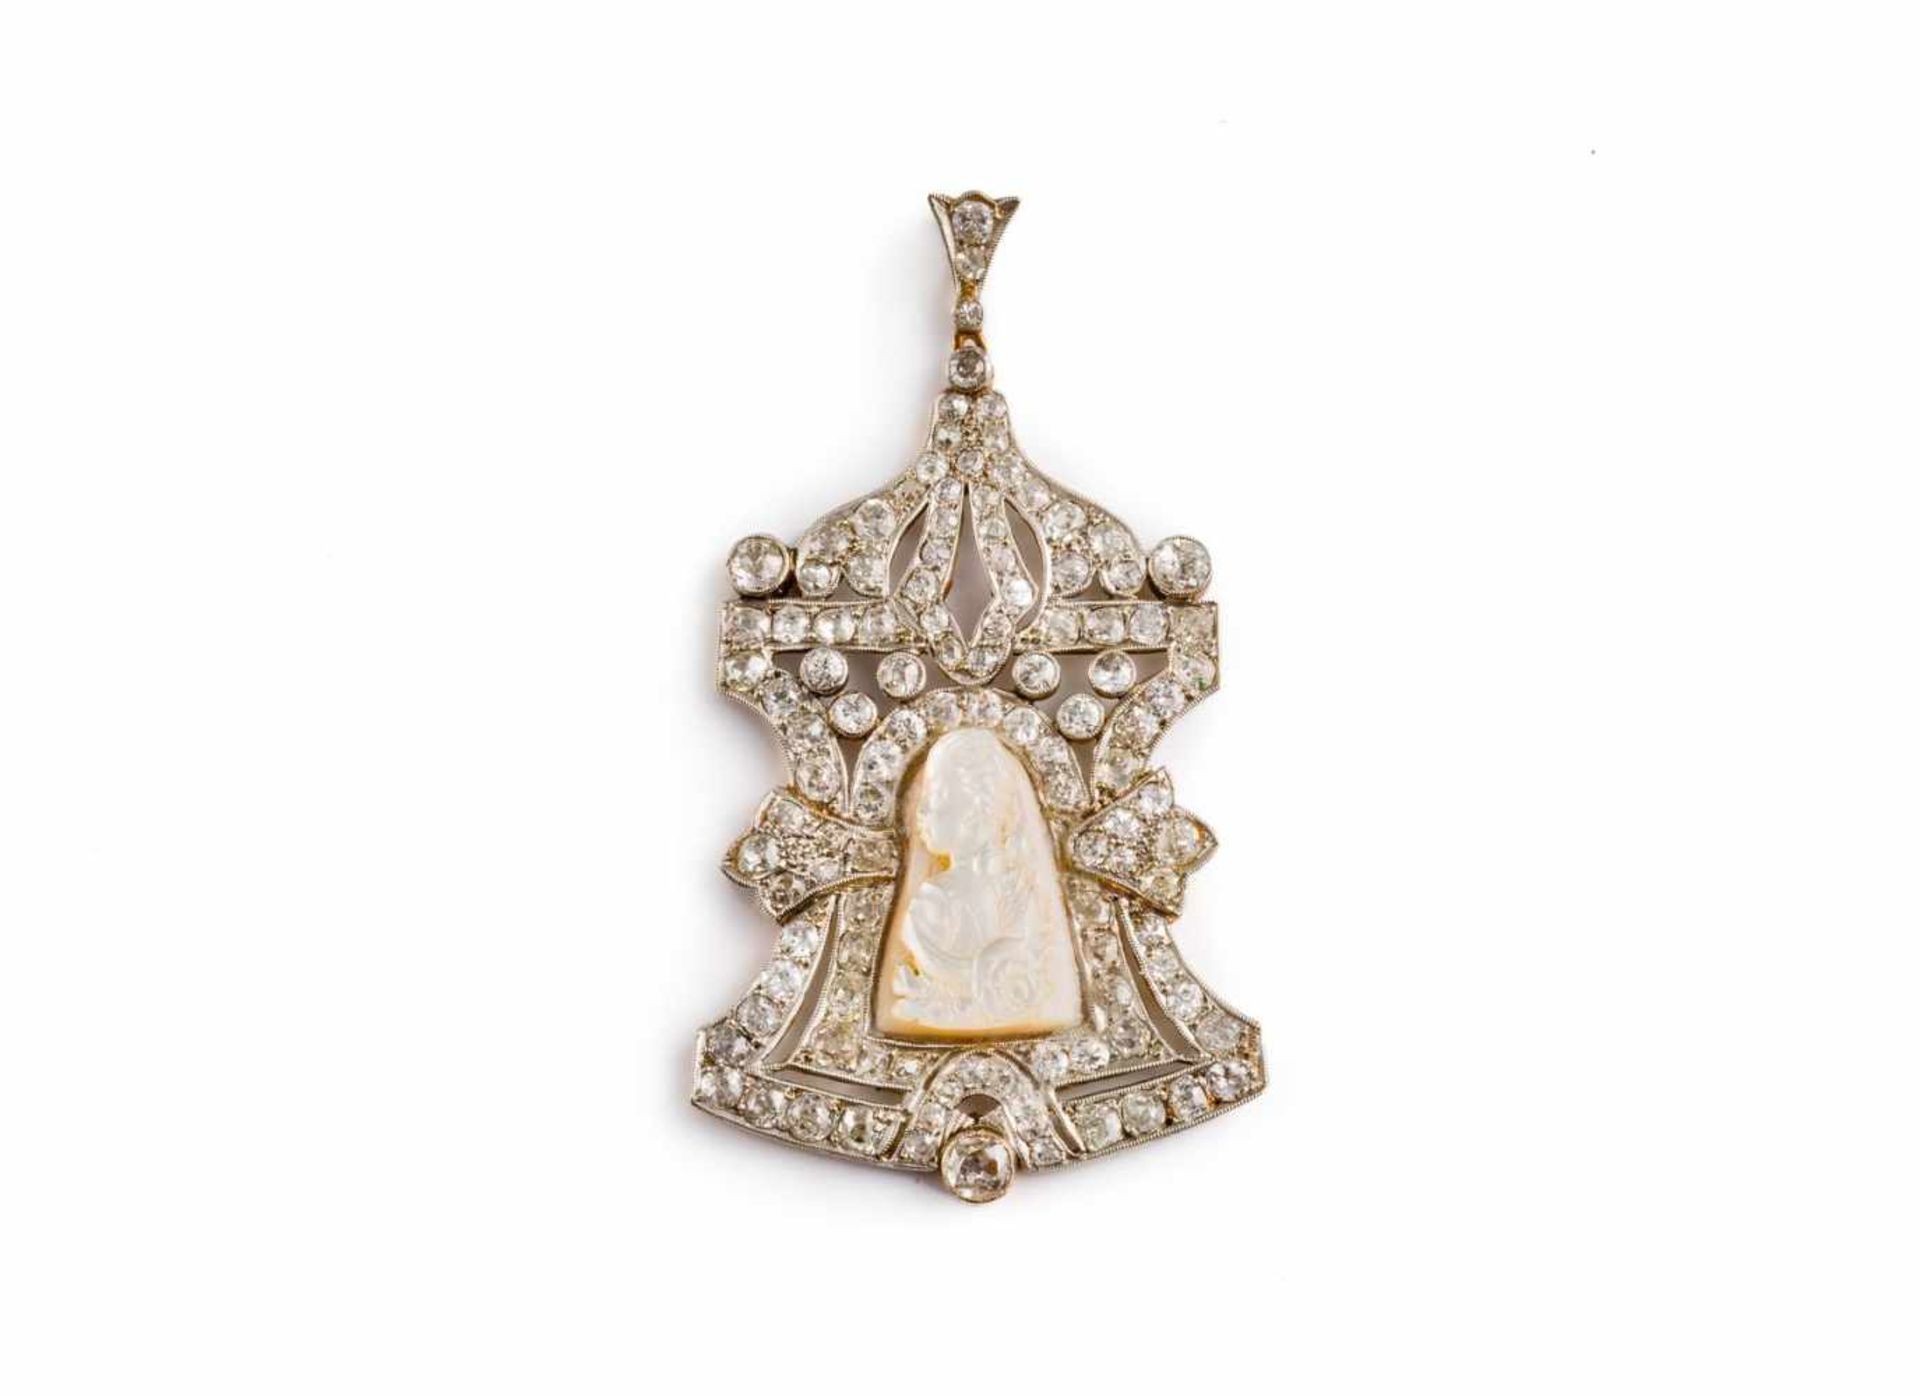 Diamant-Anhängerim Louis-XVI-Stil. Gold und teilweise mit Platin rhodiniert. In Gestalt einer